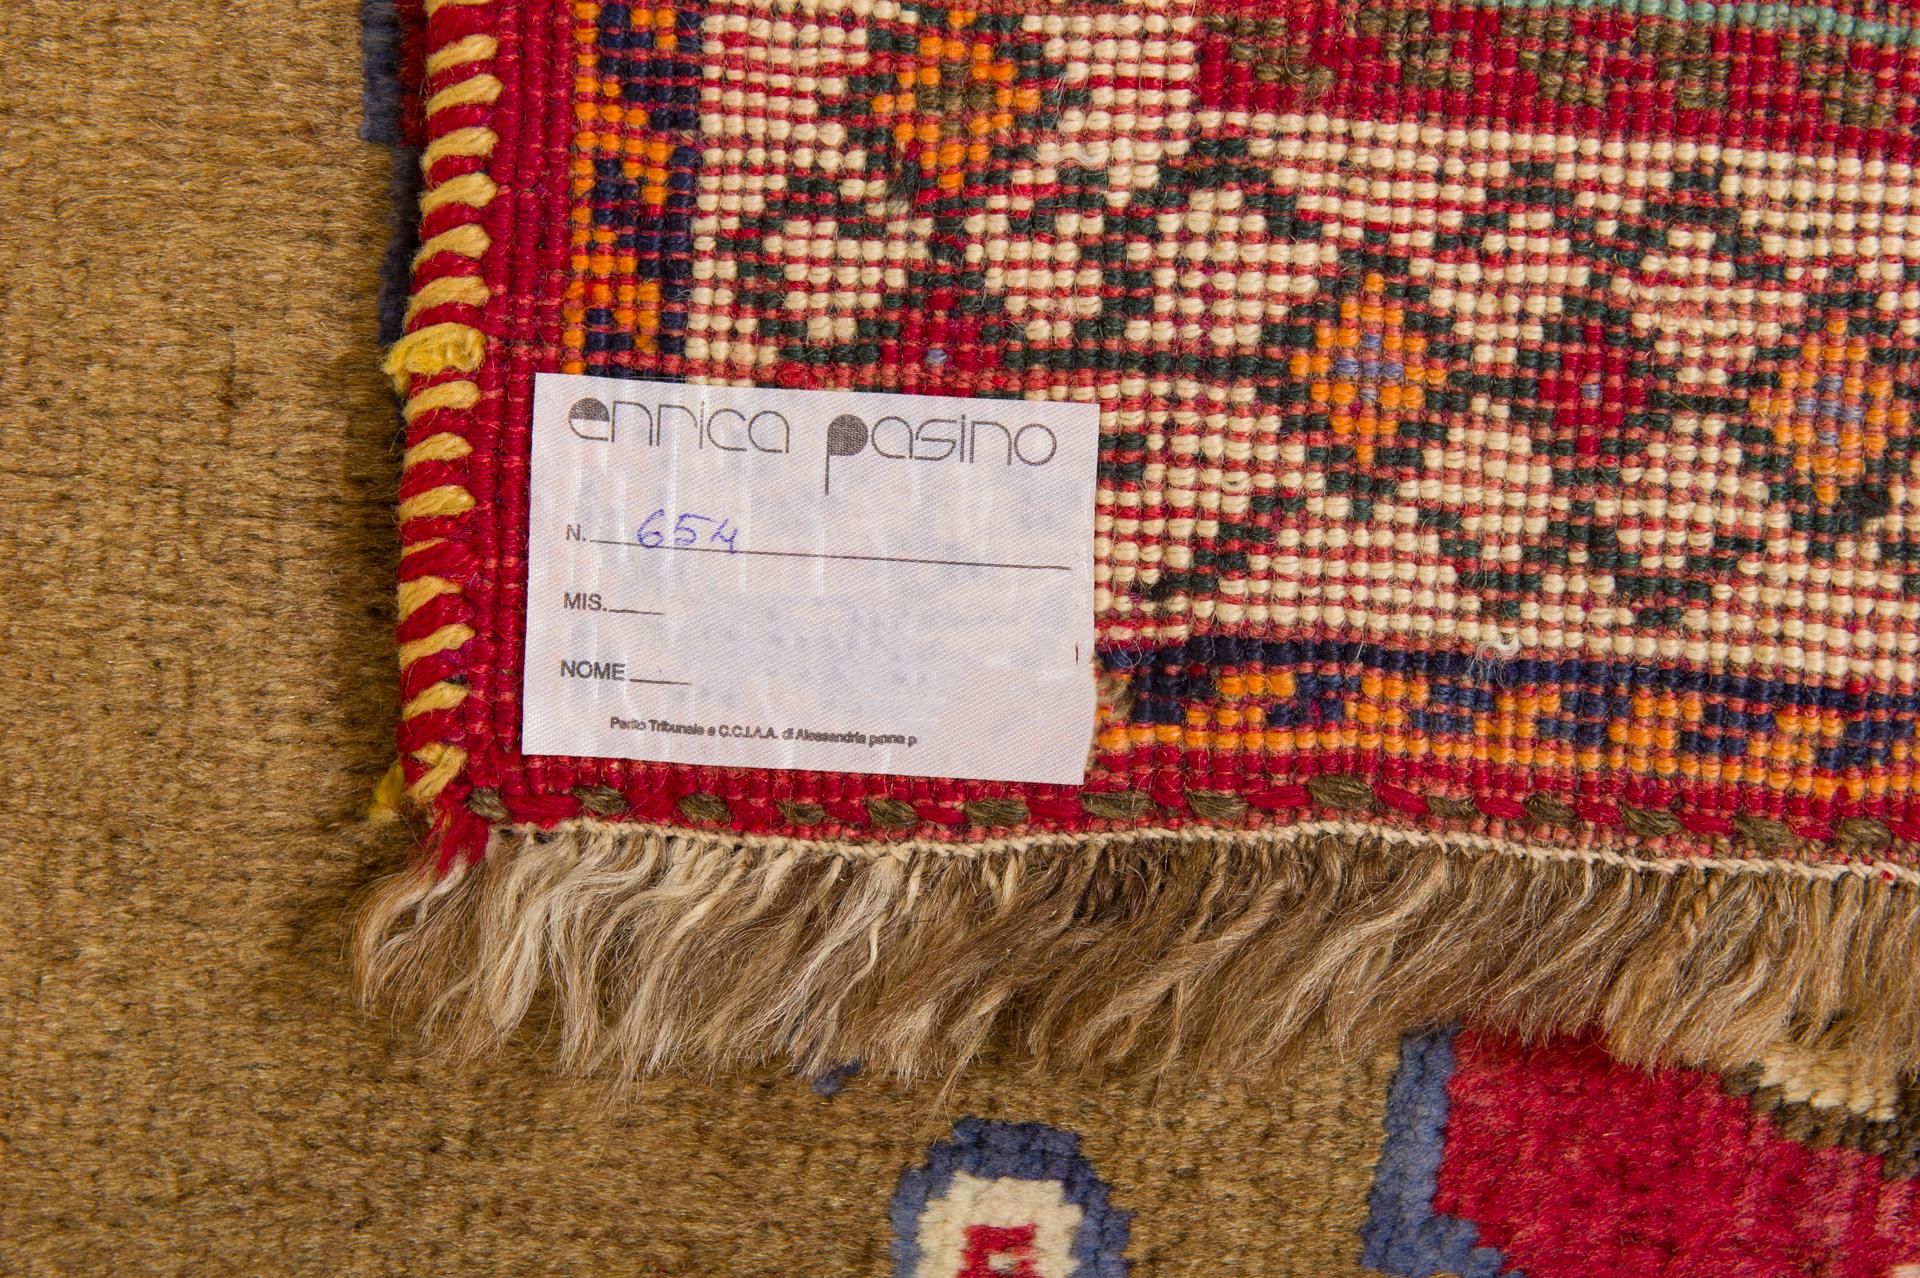 Tapis oriental à motifs animaliers, inspiré des anciens tapis persans Gabbeh du centre de l'Europe.  du vingtième siècle.
Très intéressant pour l'écriture des tisserands (pas illettrés !) qui voulaient signer leur travail :
